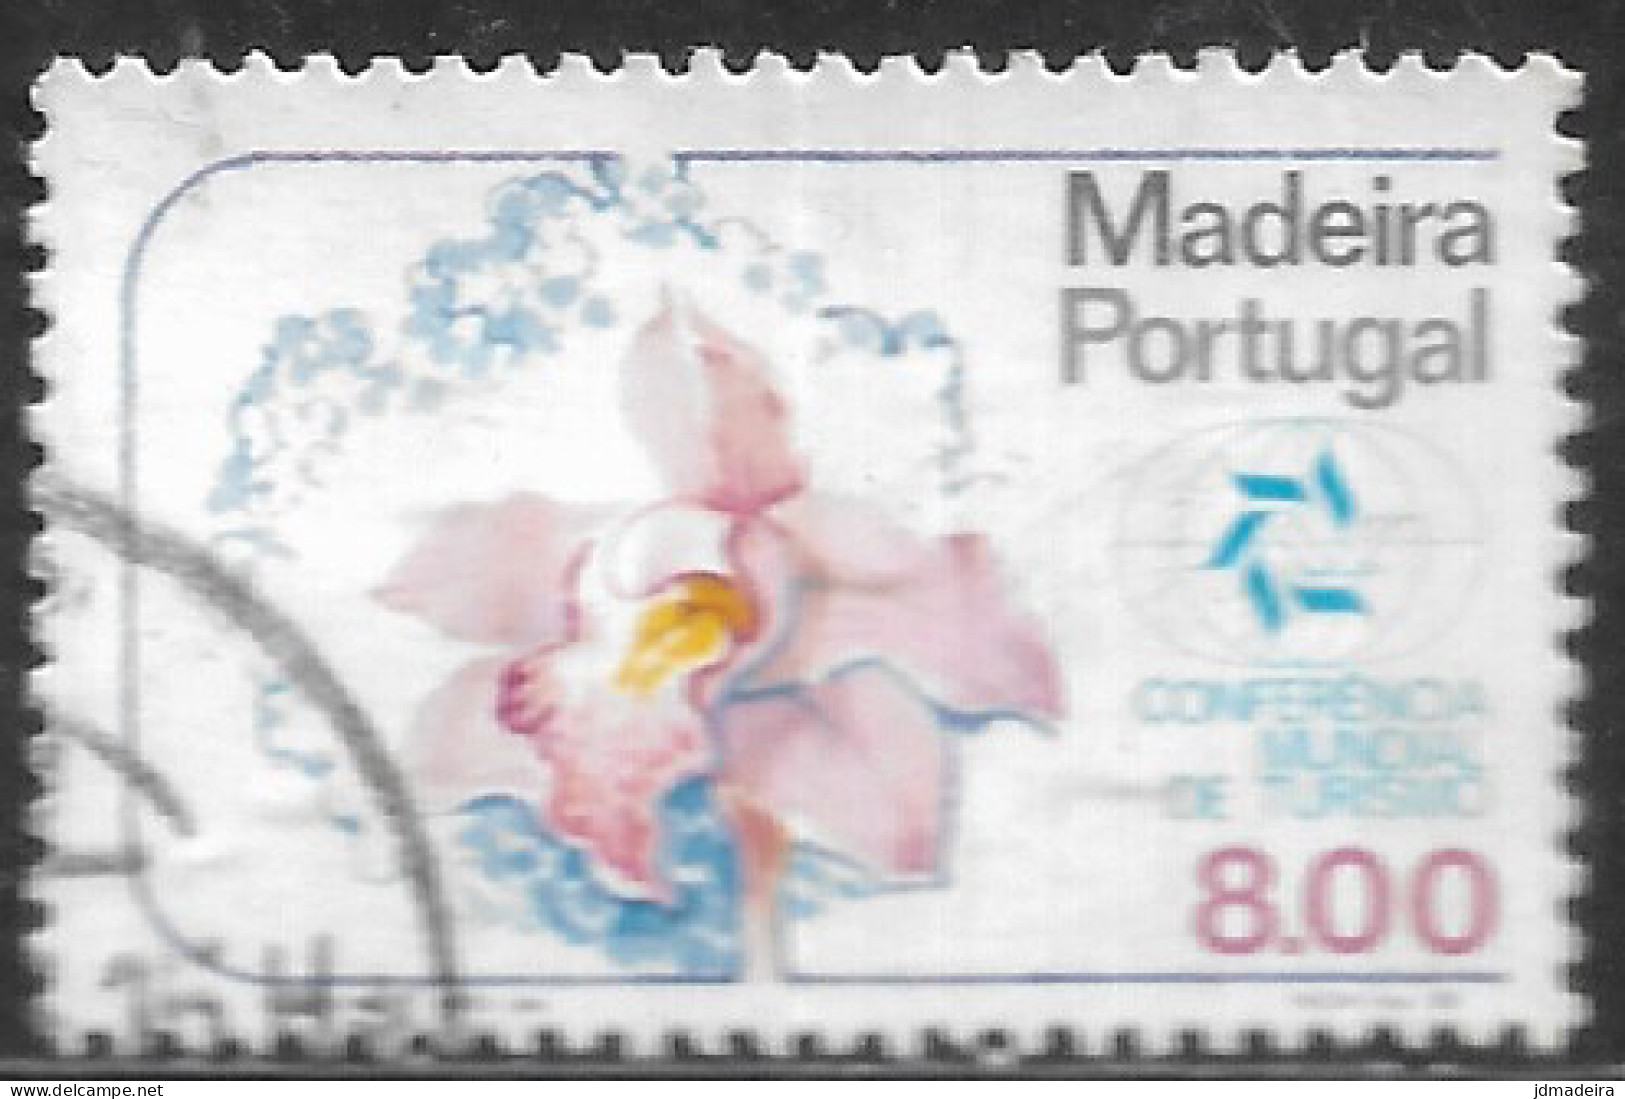 Portugal – 1980 Madeira Tourism 8.00 Used Stamp - Usado